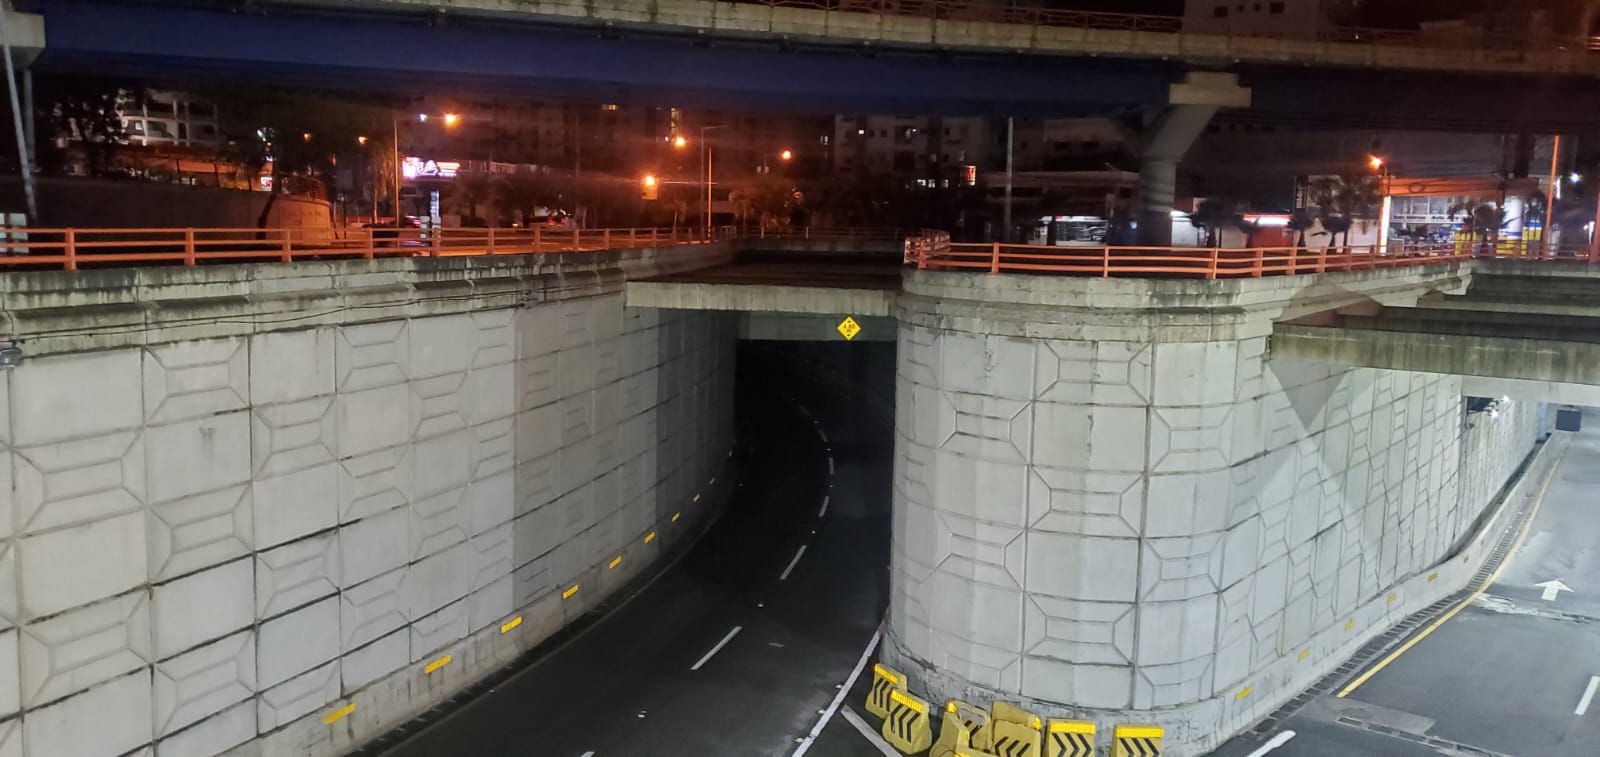 Obras Públicas cerrará esta semana túneles y elevados por mantenimiento